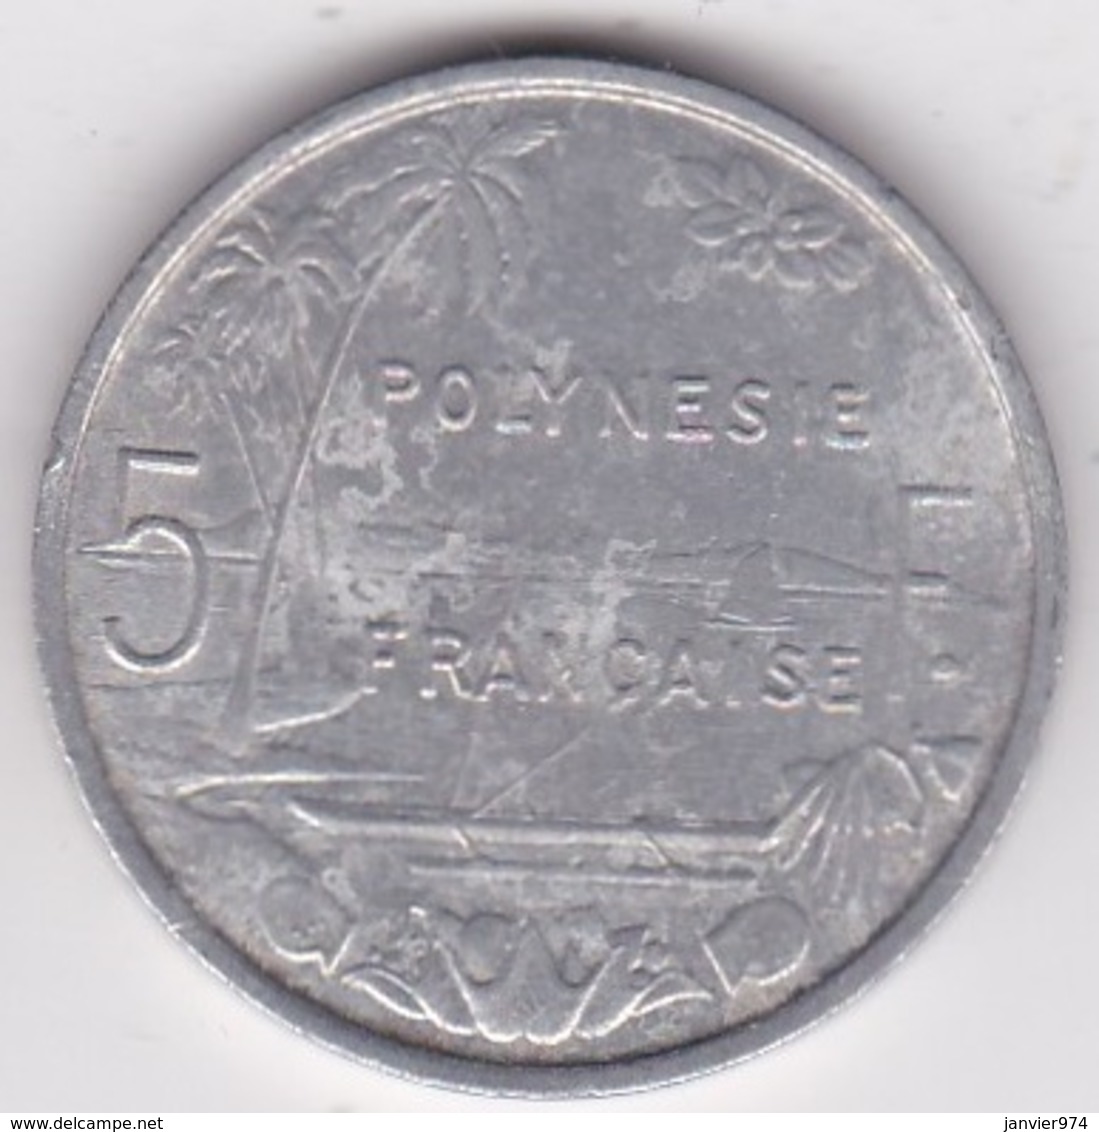 Polynésie Francaise . 5 Francs 1975, En Aluminium - Frans-Polynesië